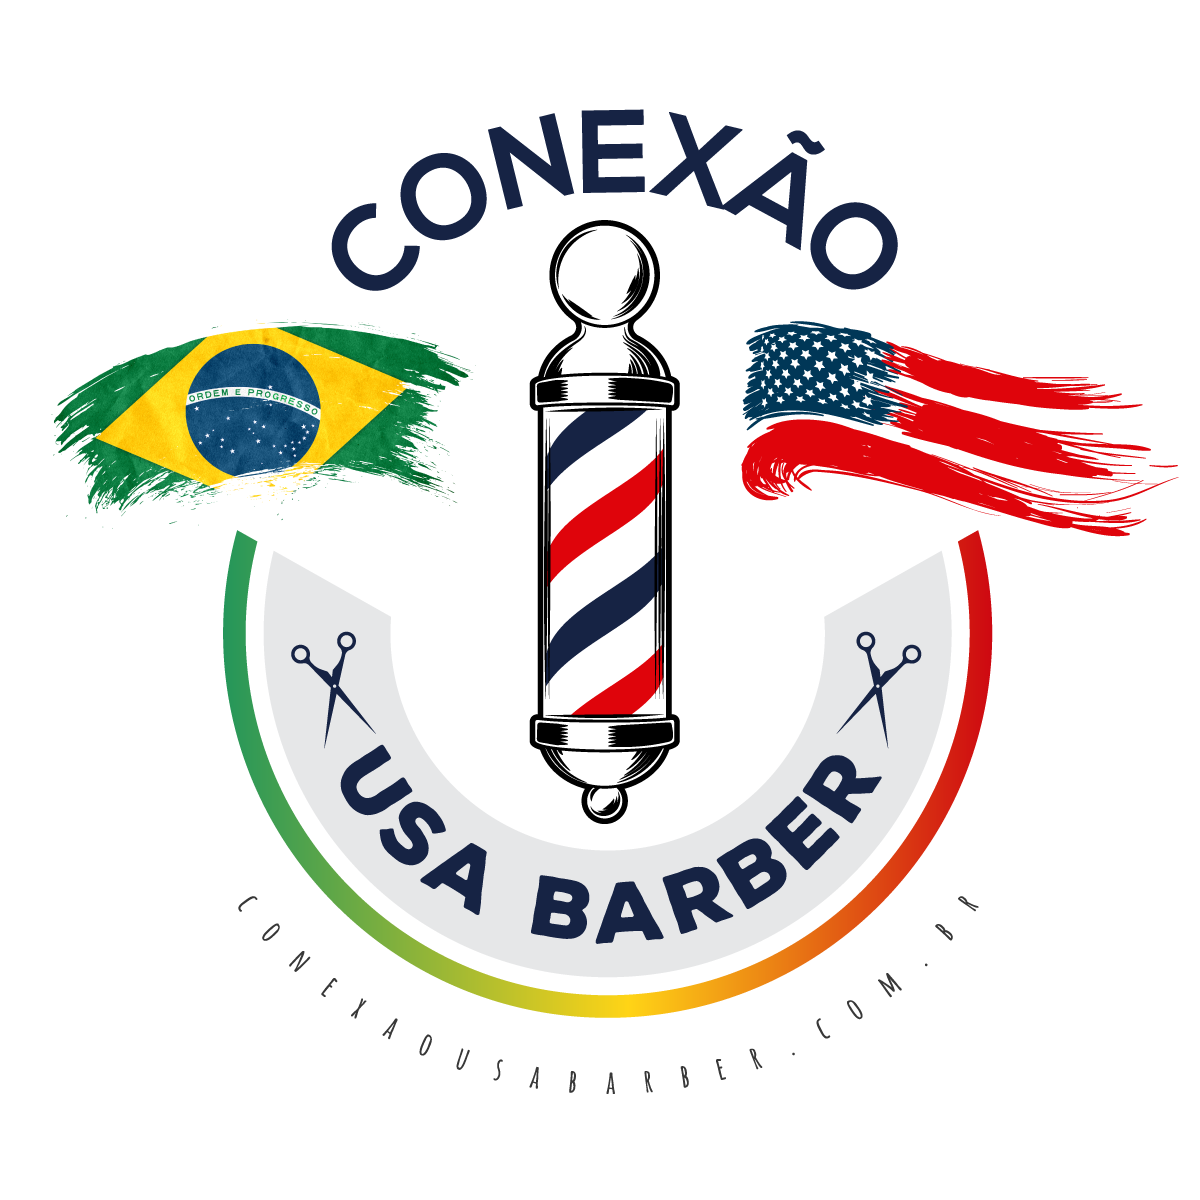 Conexão USA Barber